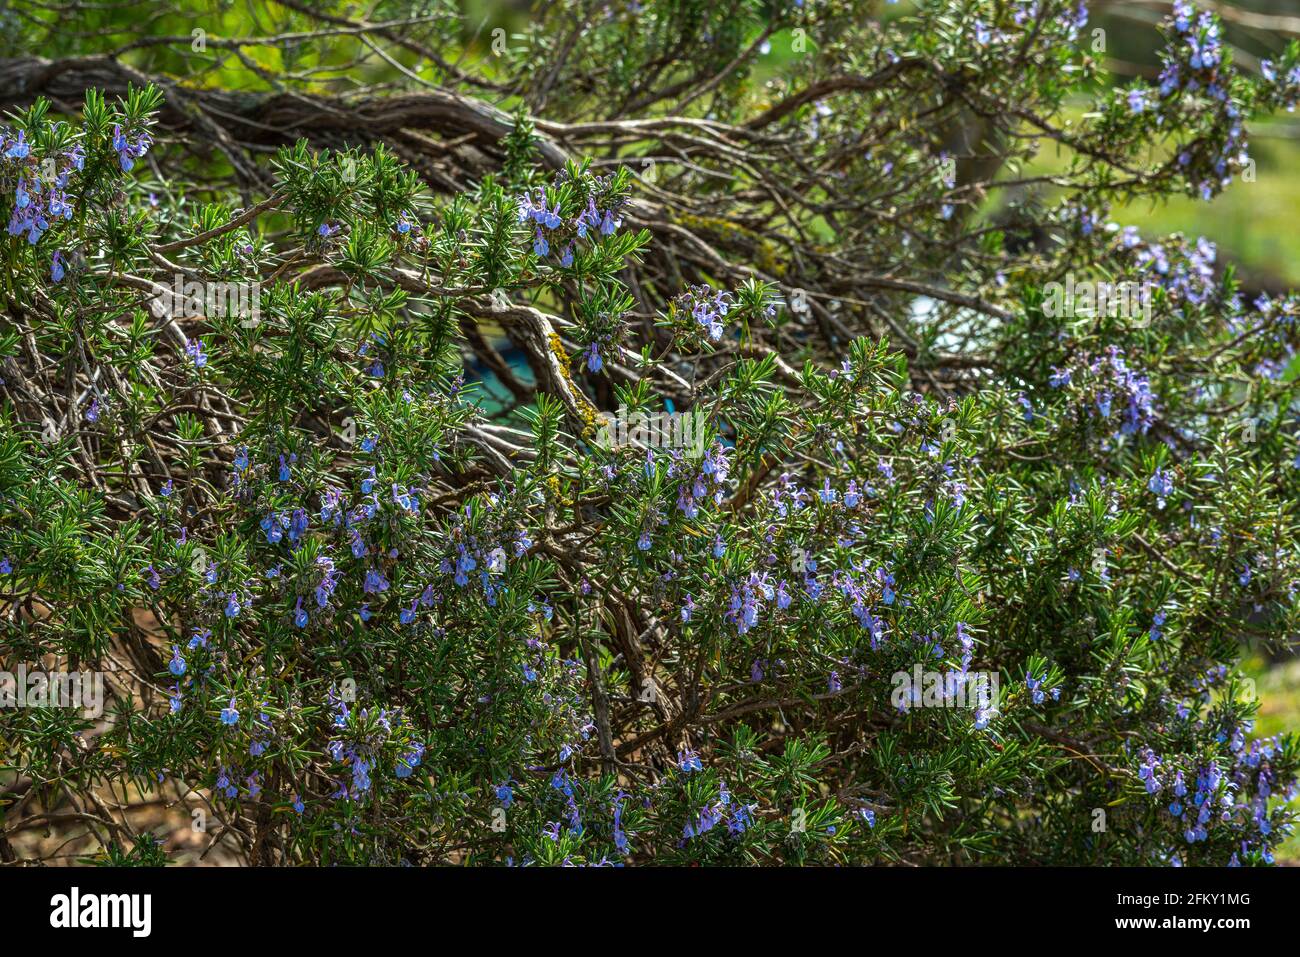 Dettaglio di una pianta di rosmarino in fiore. Abruzzo, Italia, europa Foto Stock